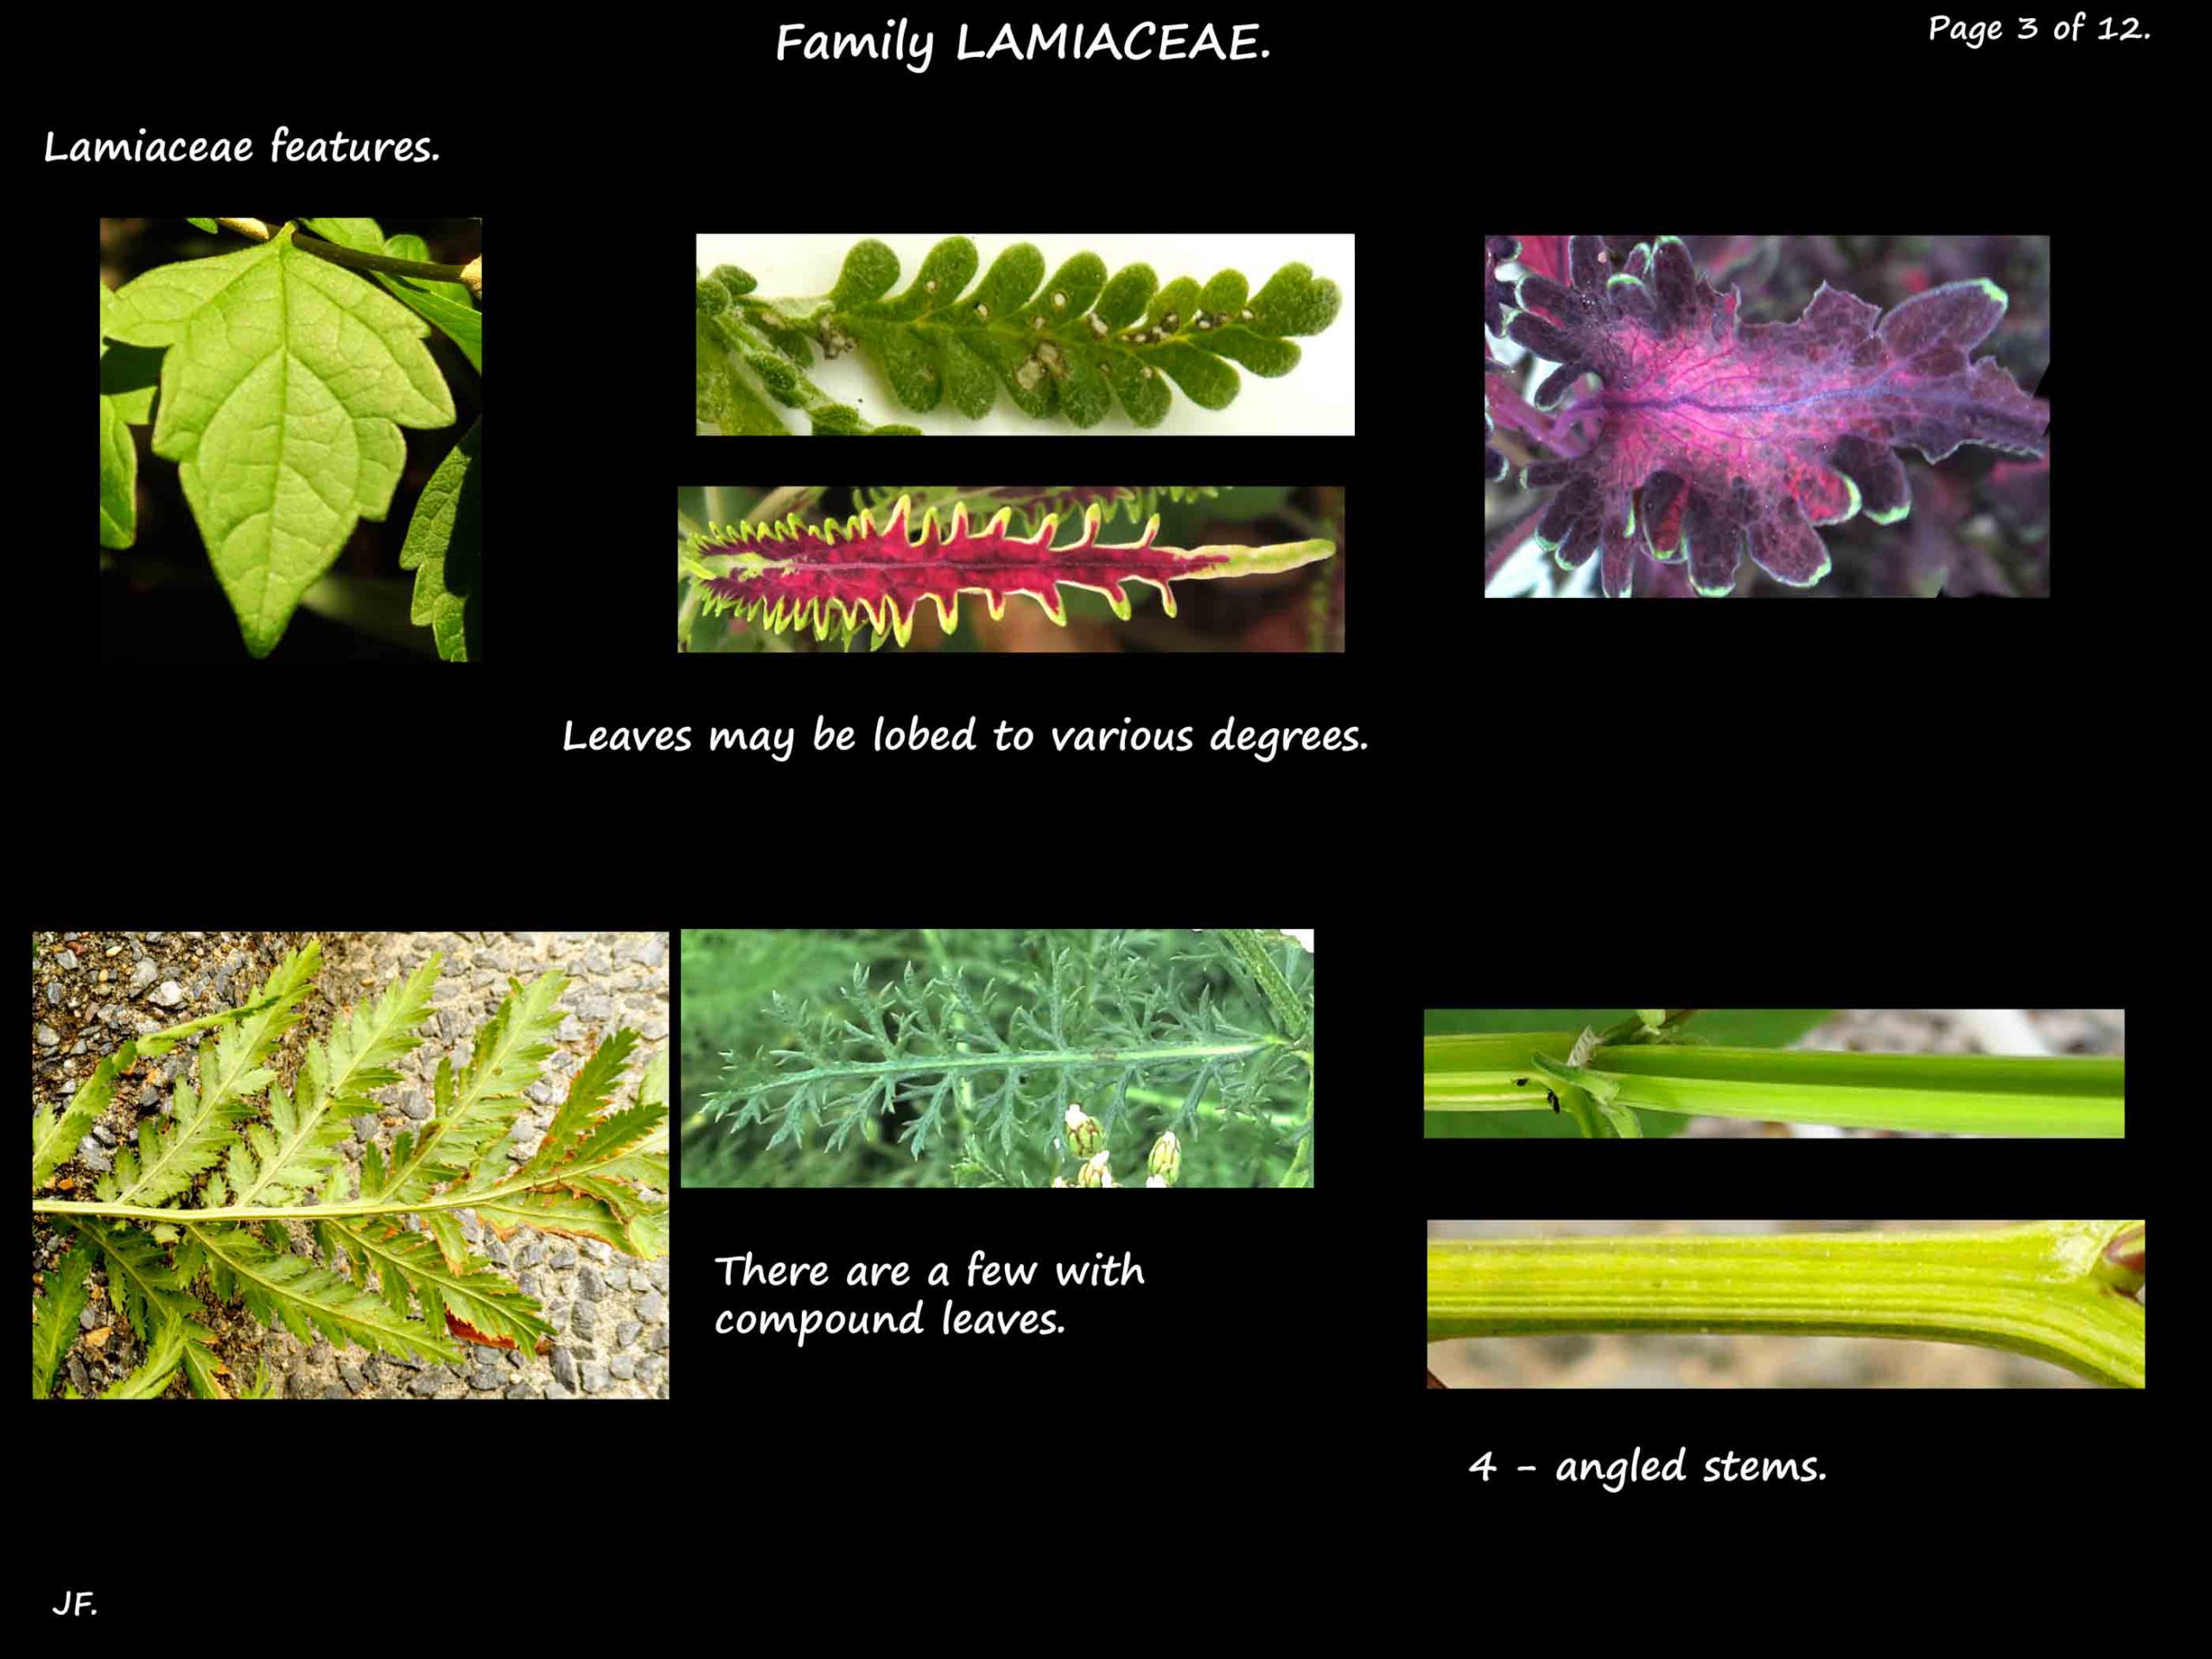 3 More Lamiaceae leaf types